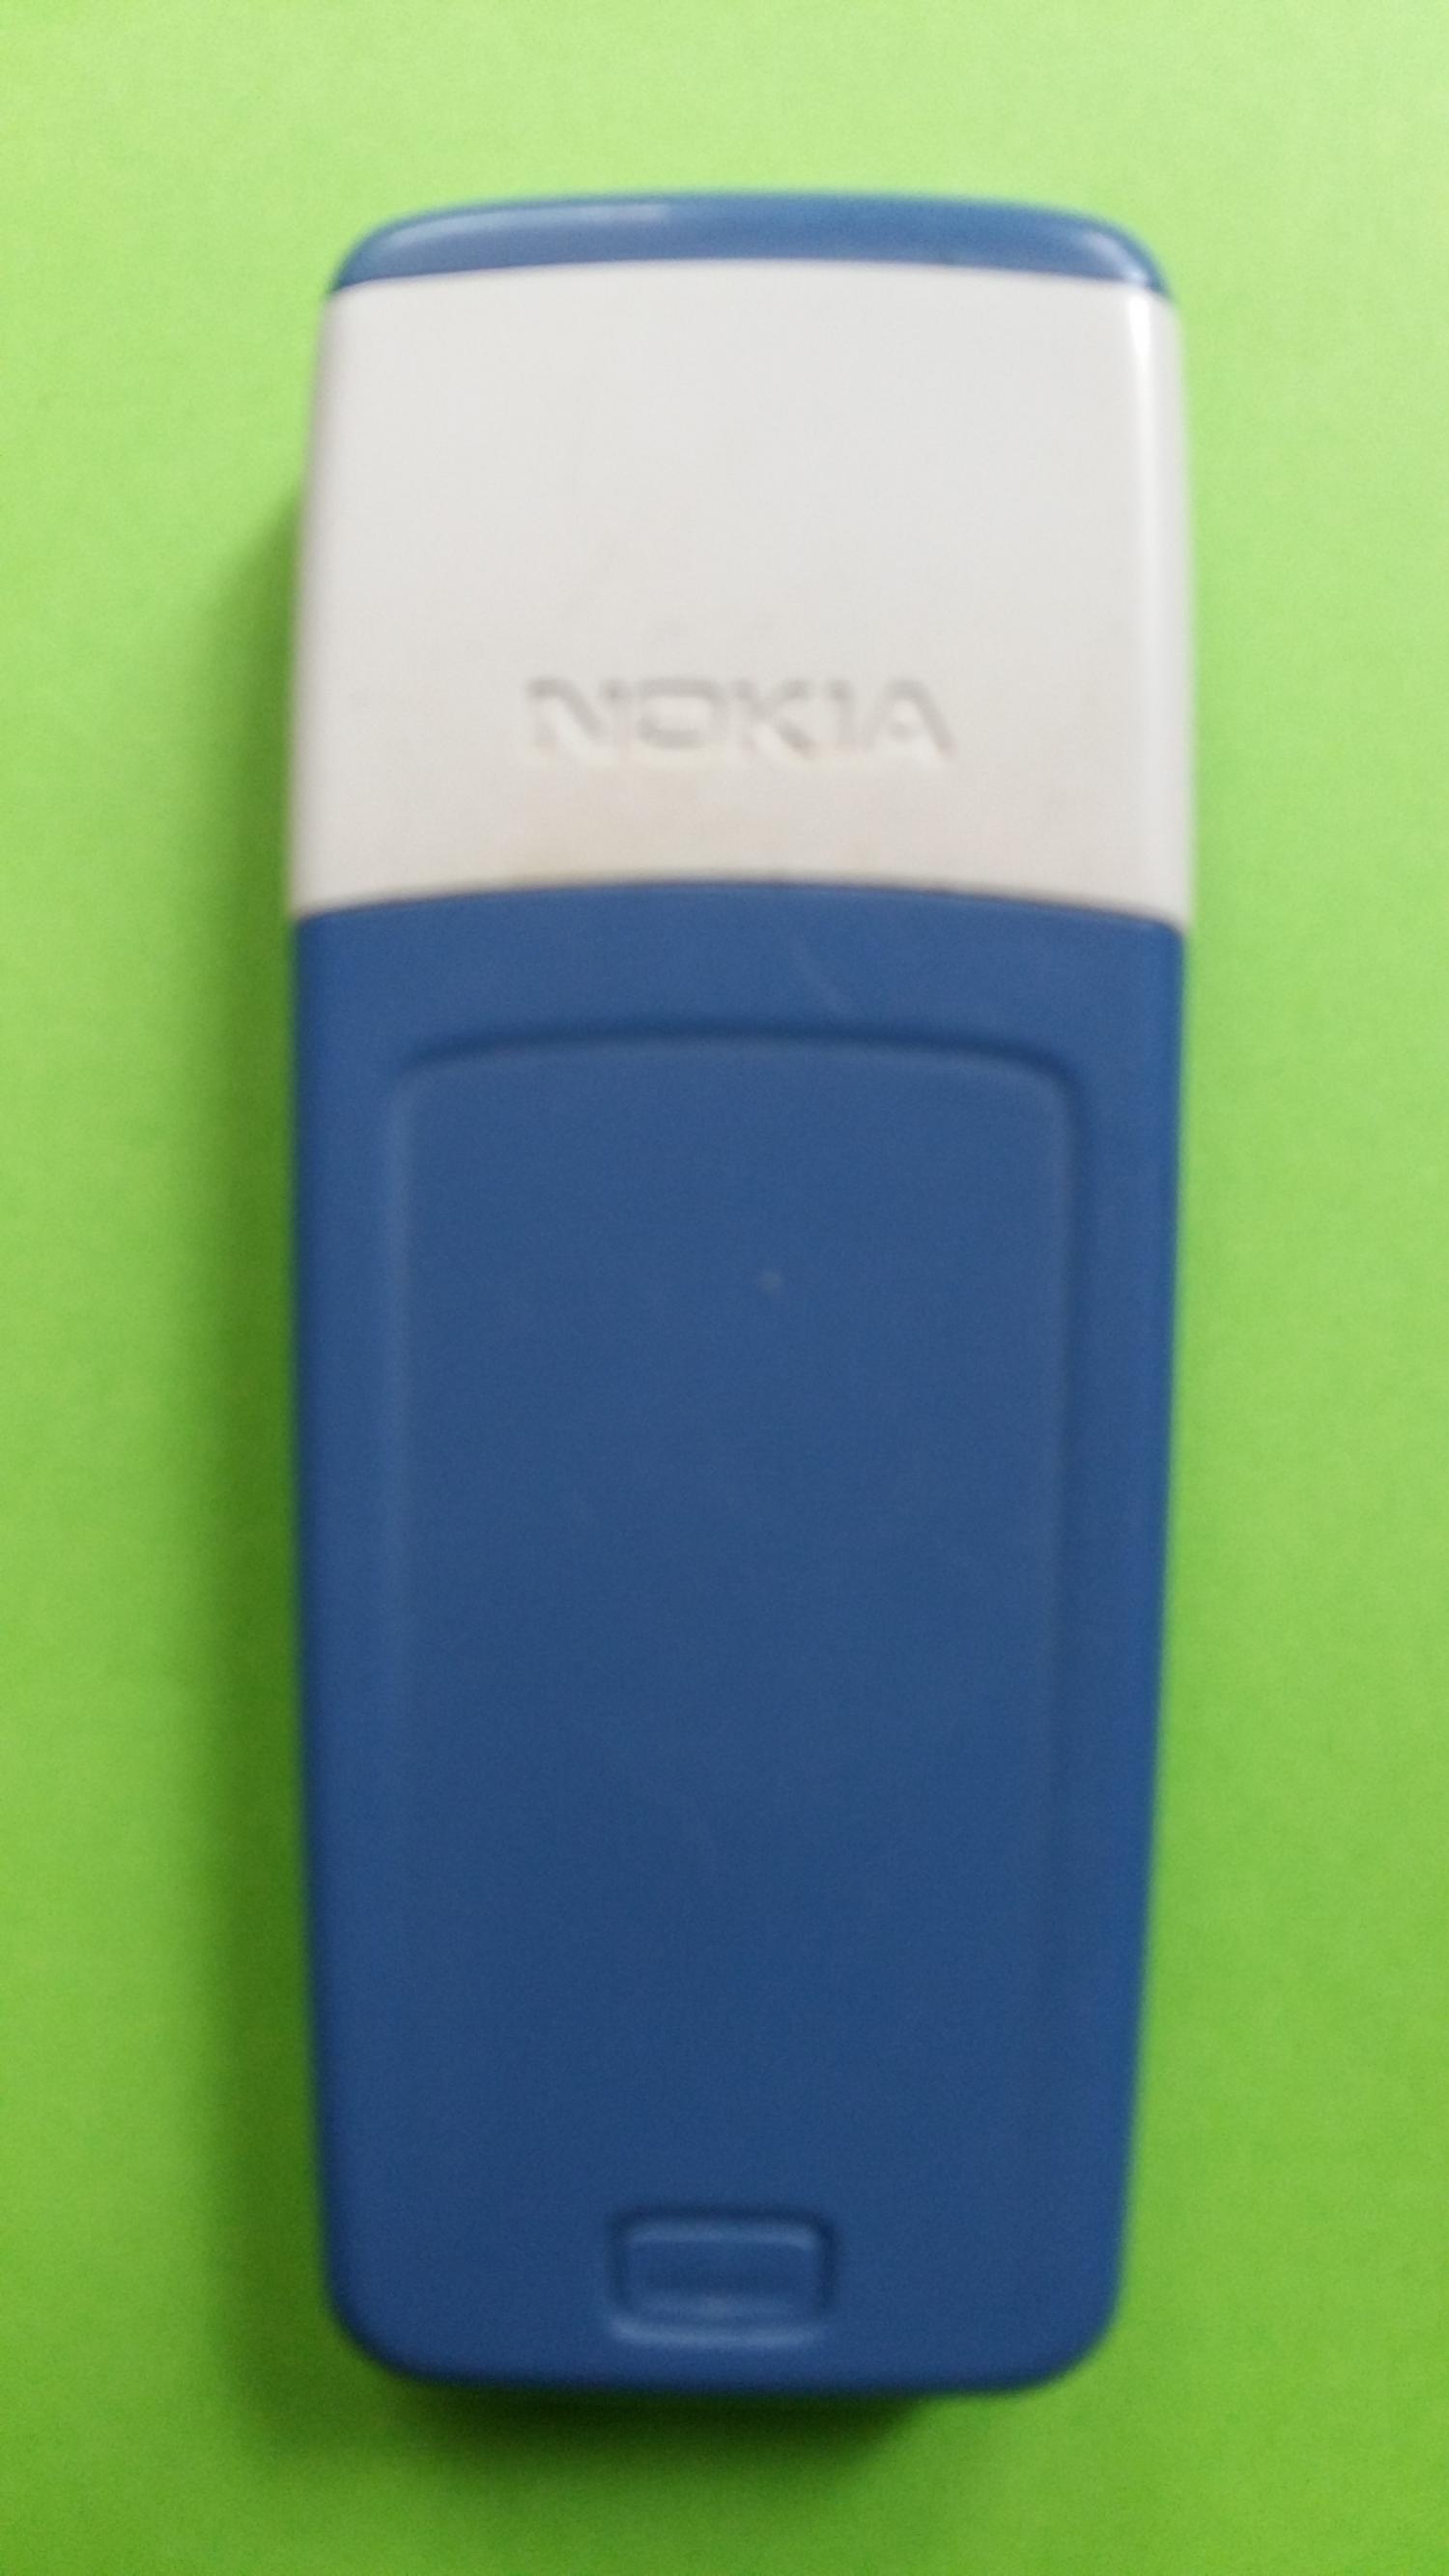 image-7303004-Nokia 1110i (4)2.jpg